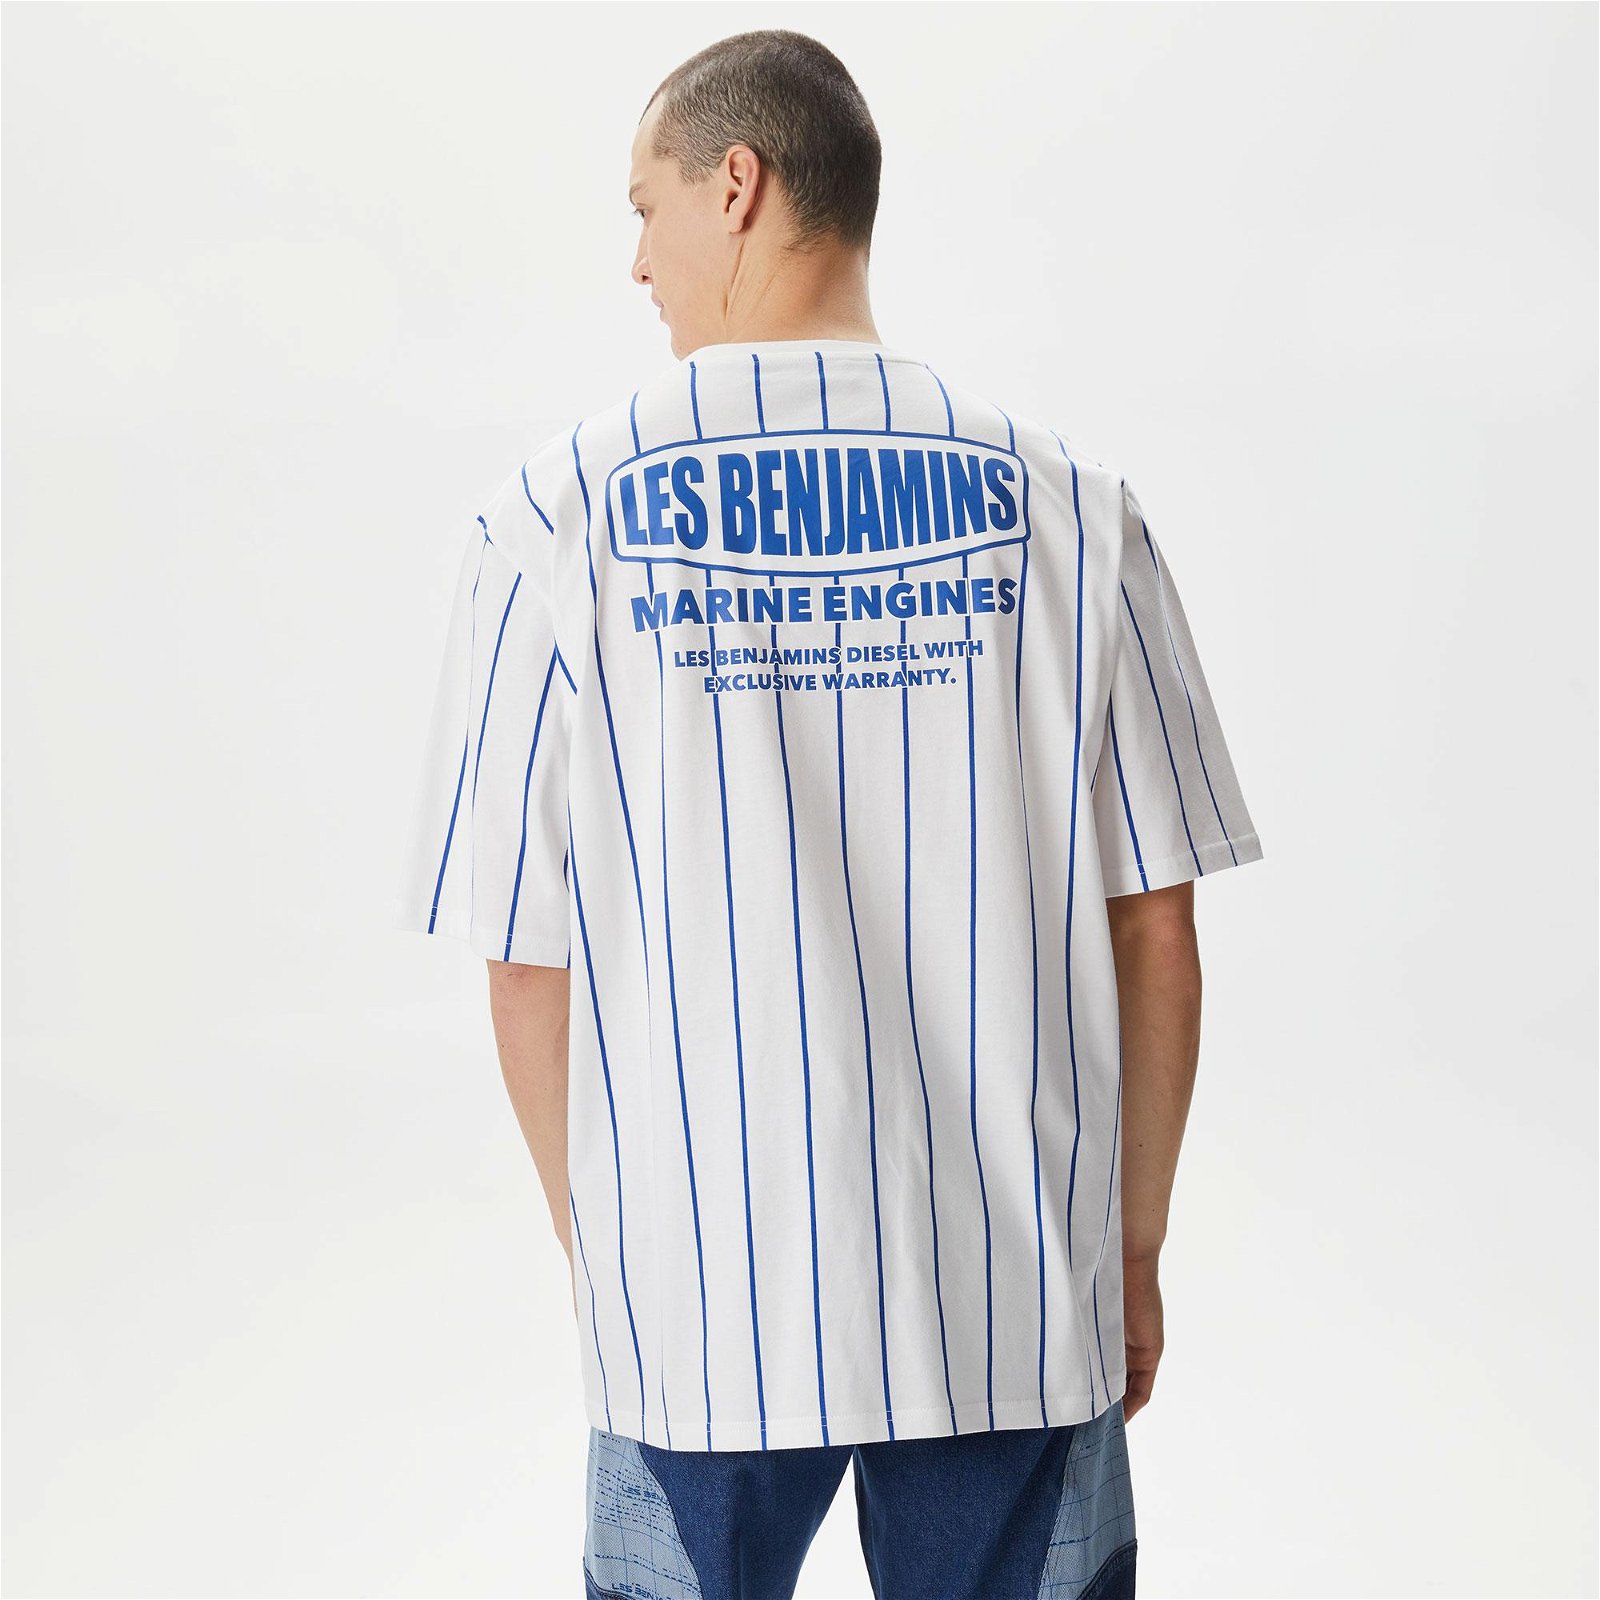 Les Benjamins Kısmet Voyage East to West 036 Erkek Beyaz T-Shirt